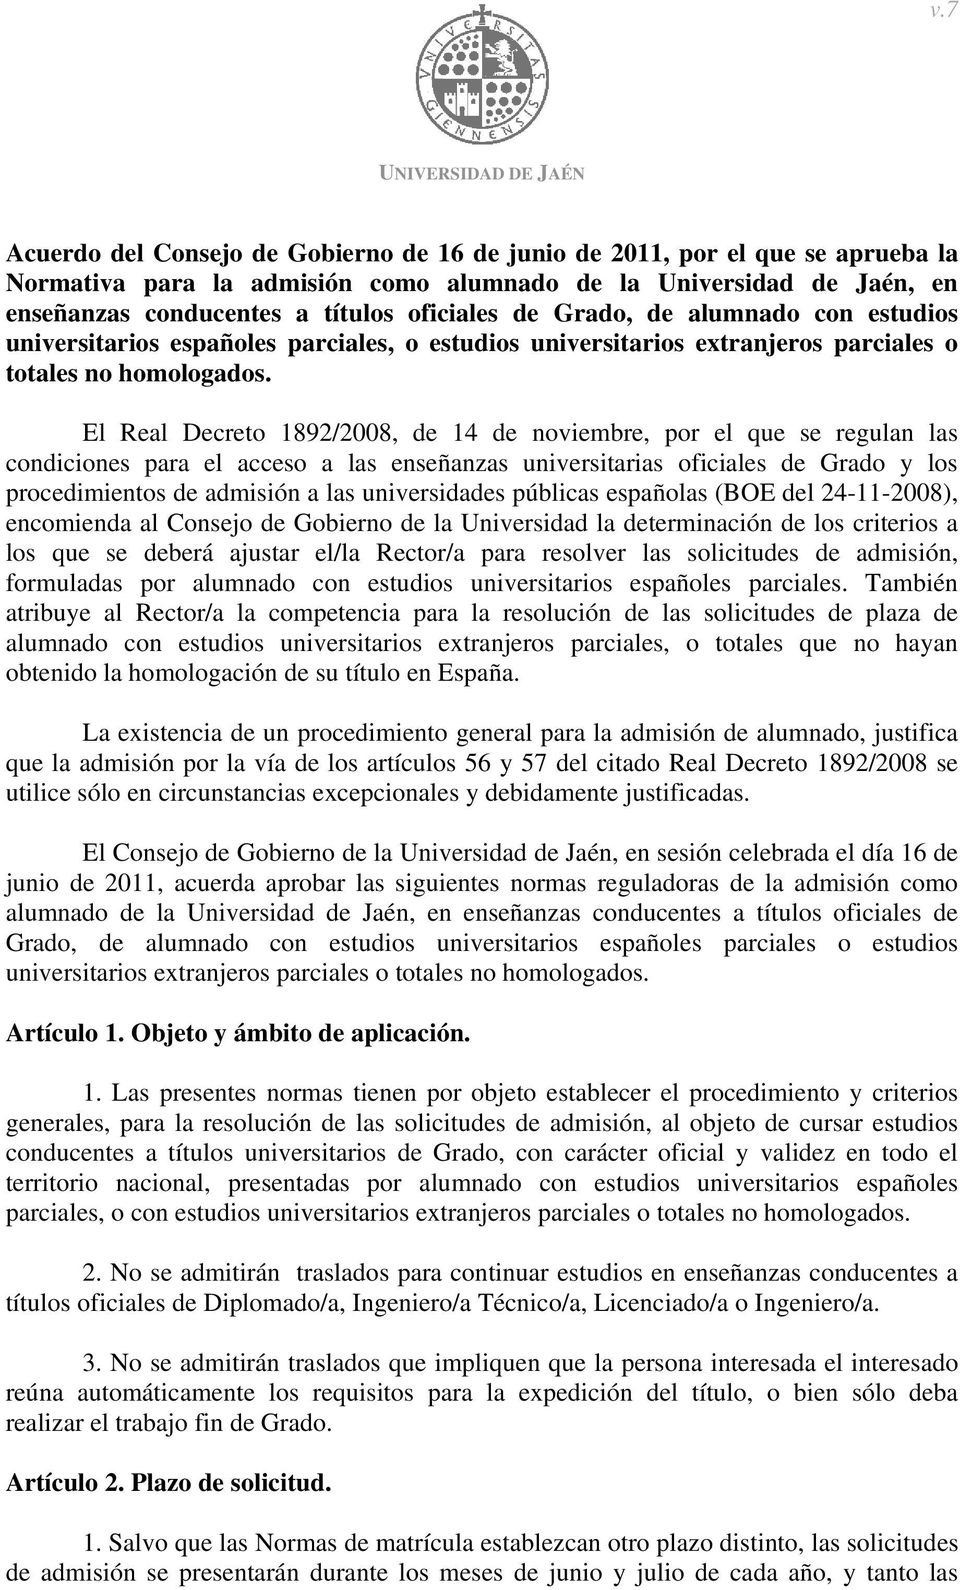 El Real Decreto 1892/2008, de 14 de noviembre, por el que se regulan las condiciones para el acceso a las enseñanzas universitarias oficiales de Grado y los procedimientos de admisión a las